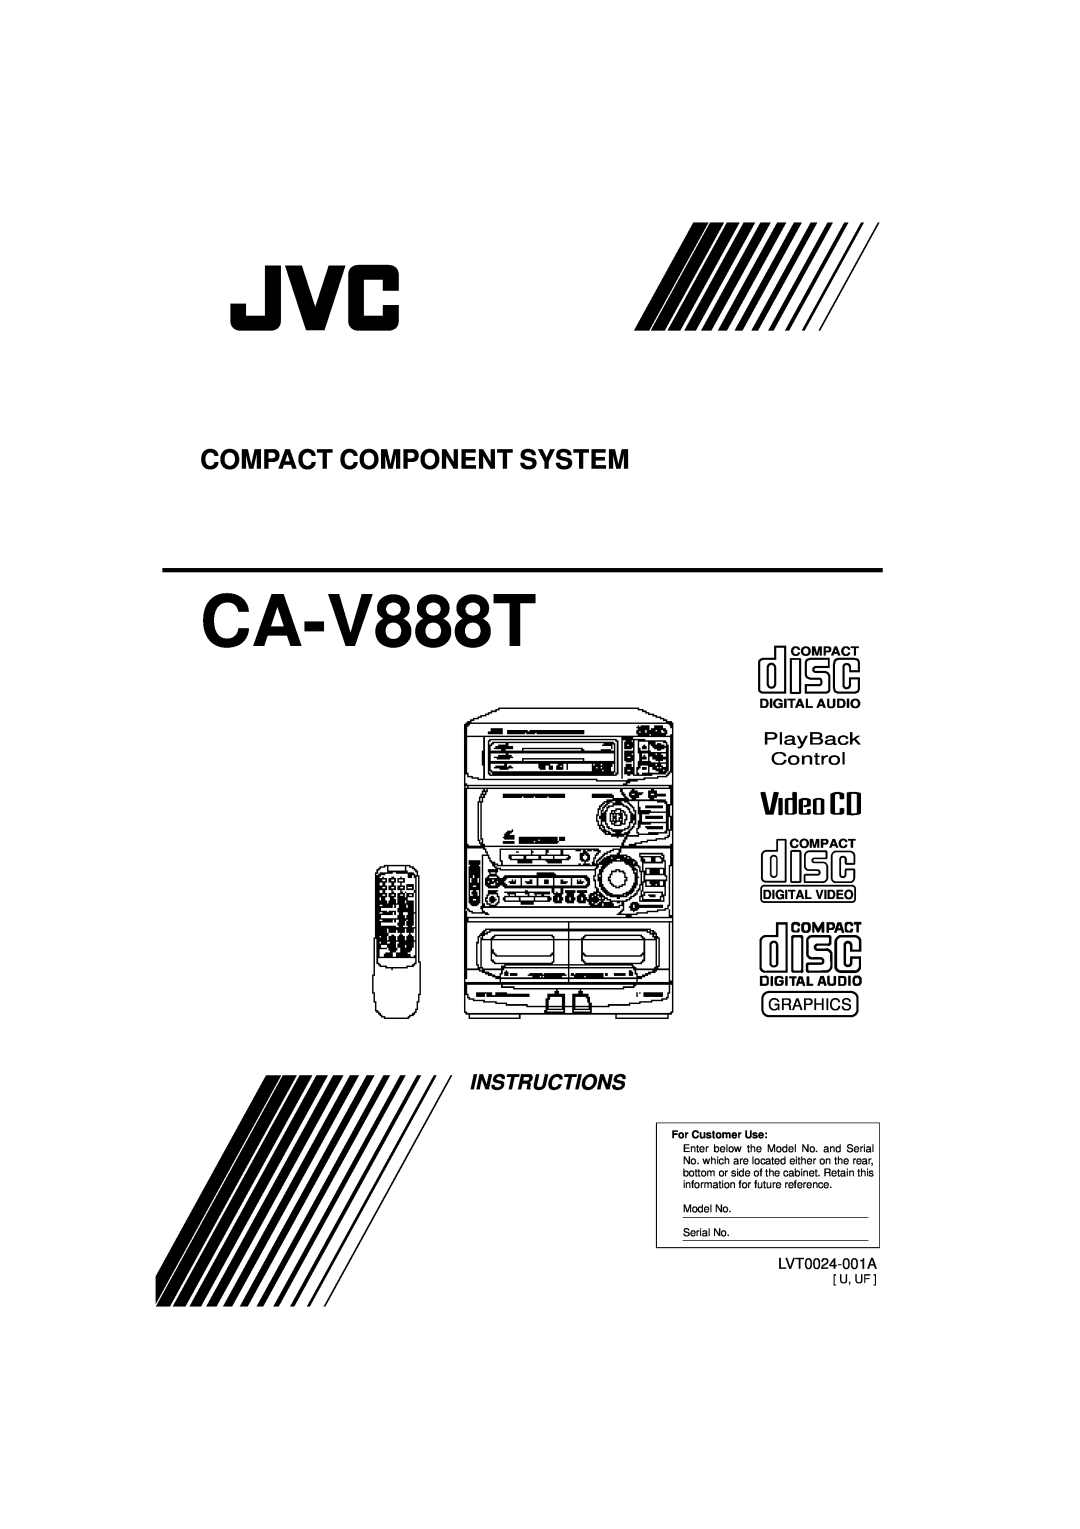 JVC CA-V888T manual Instructions, Compact Component System, PlayBack Control, Graphics, LVT0024-001A, Model No Serial No 